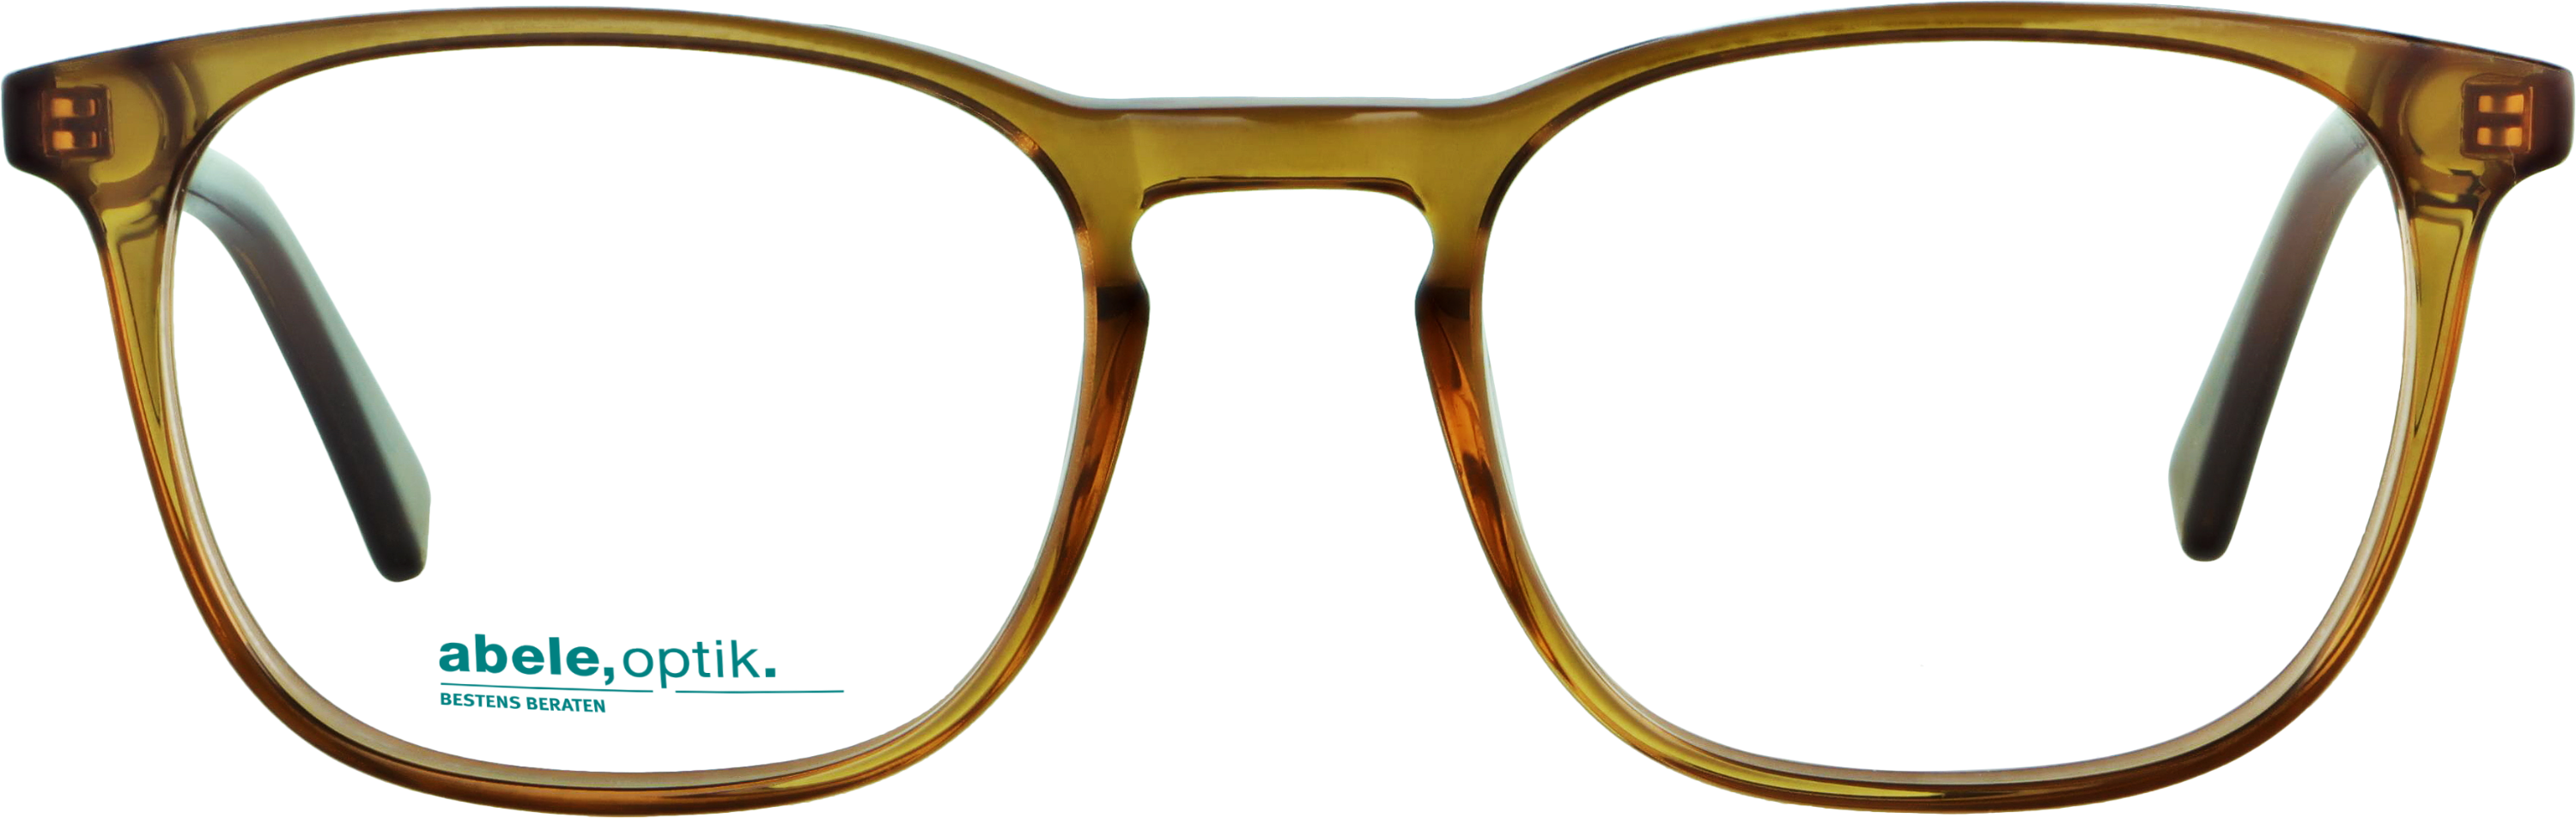 Das Bild zeigt die Korrektionsbrille 141431 von der Marke Abele Optik in braun.